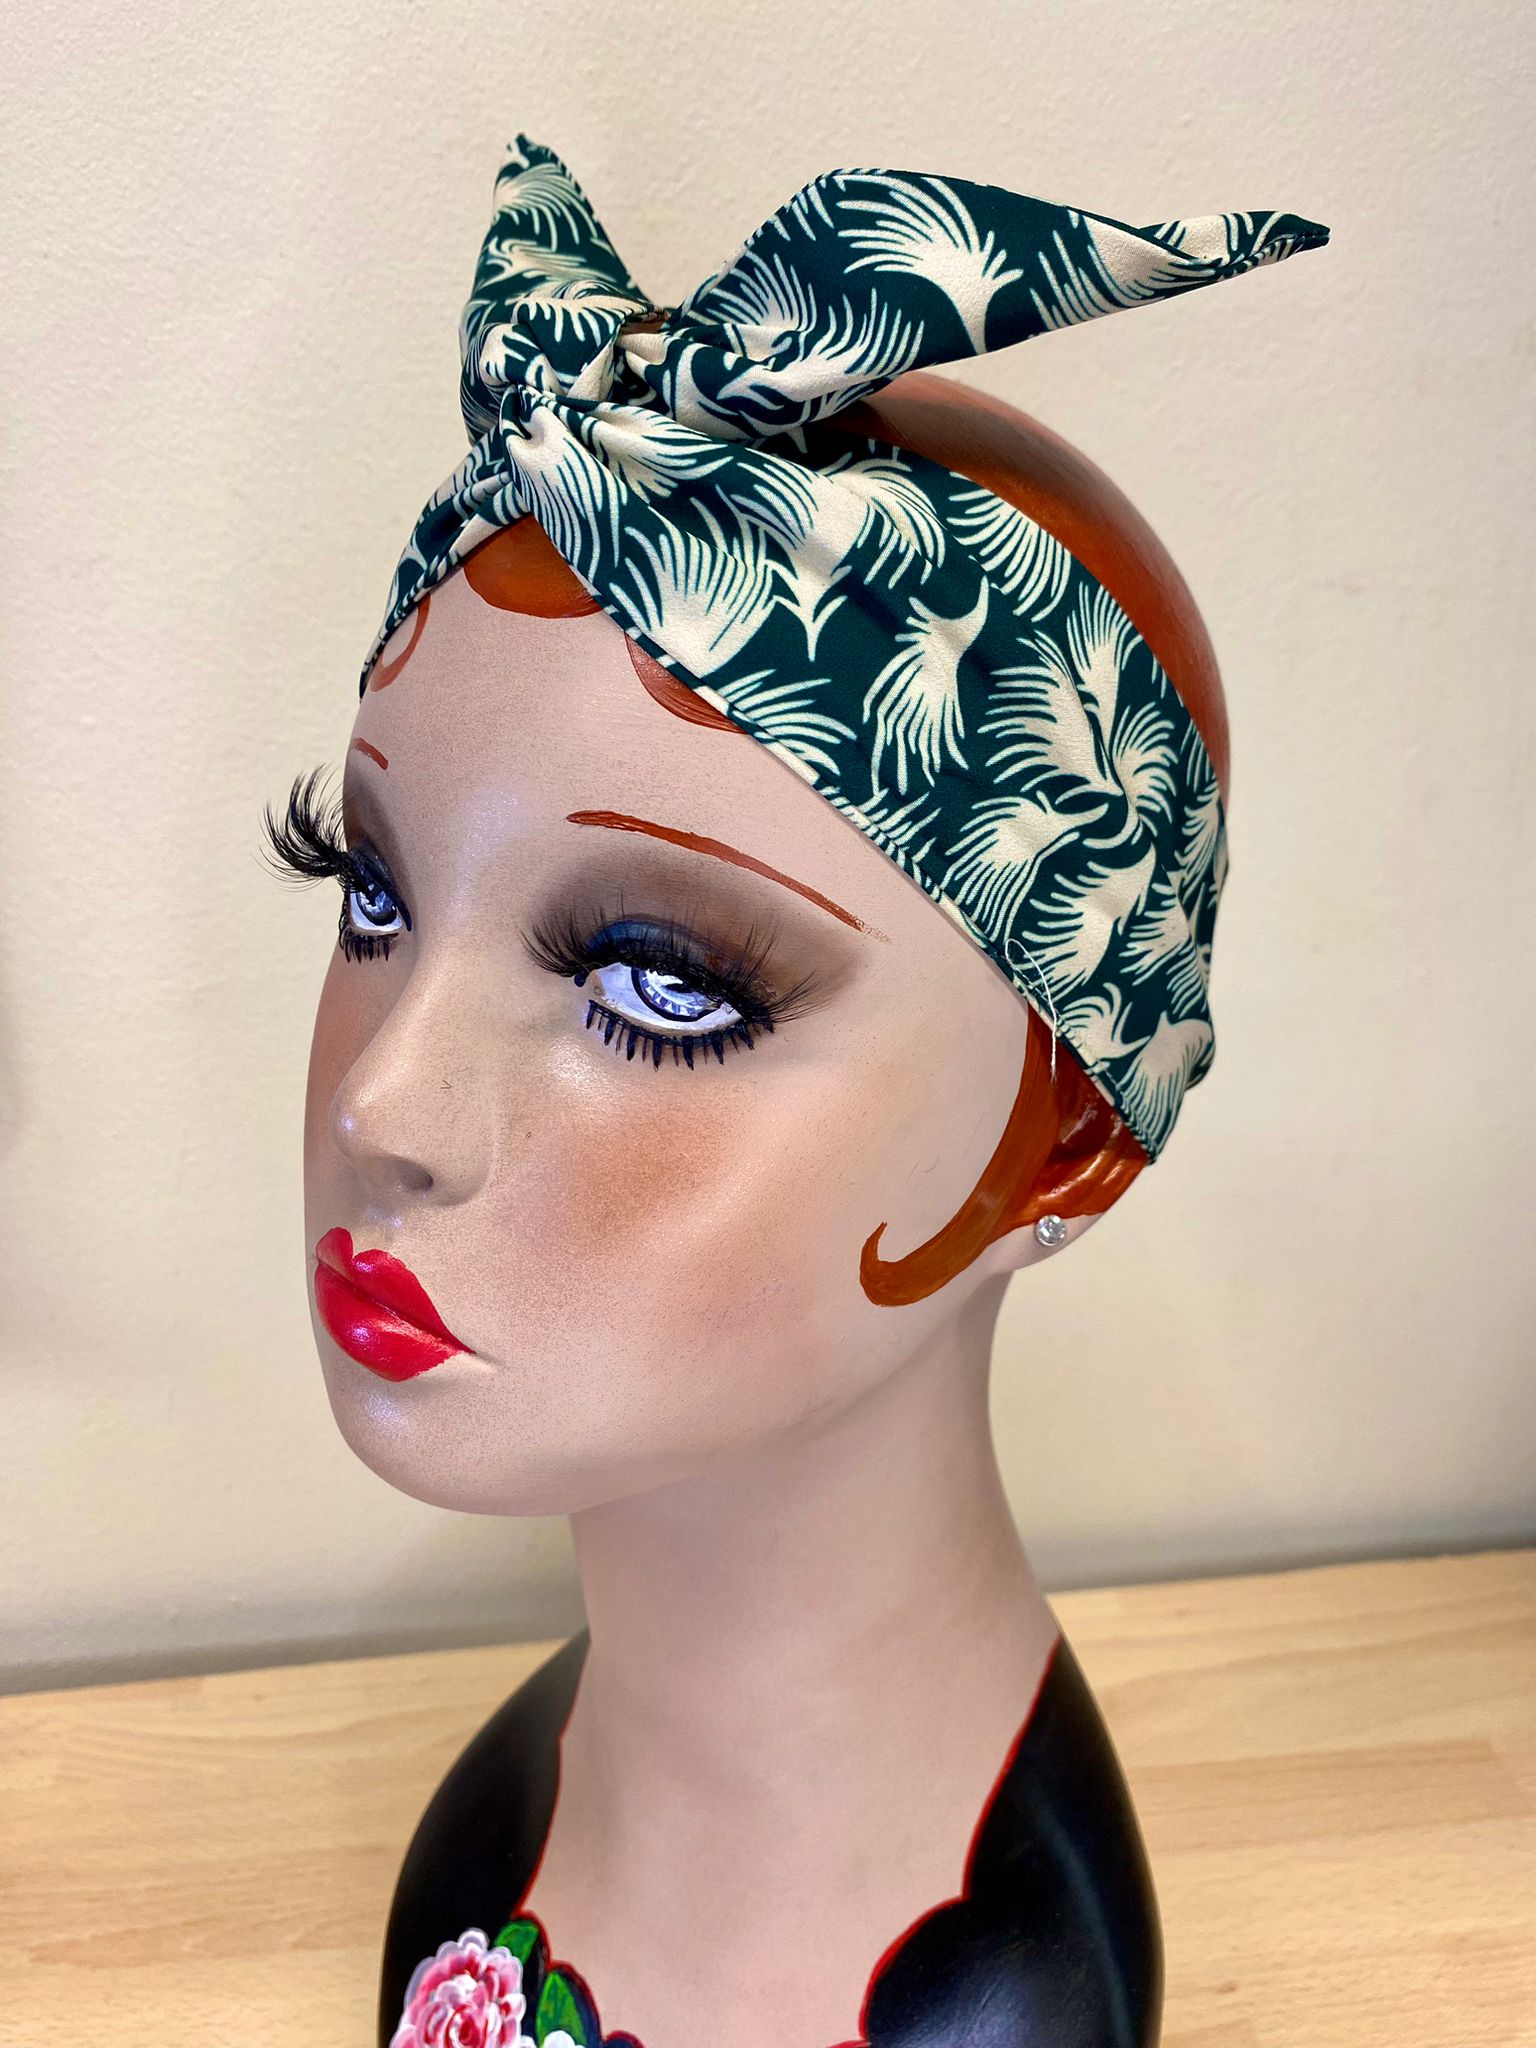 Twist &amp; Go.. Stirnband mit Draht (kein lästiges Knoten oder Schleifen nötig) im Rockabilly-/Landgirl-Stil der 1950er Jahre / 1940er Jahre. Mit grünem Whisp-Print